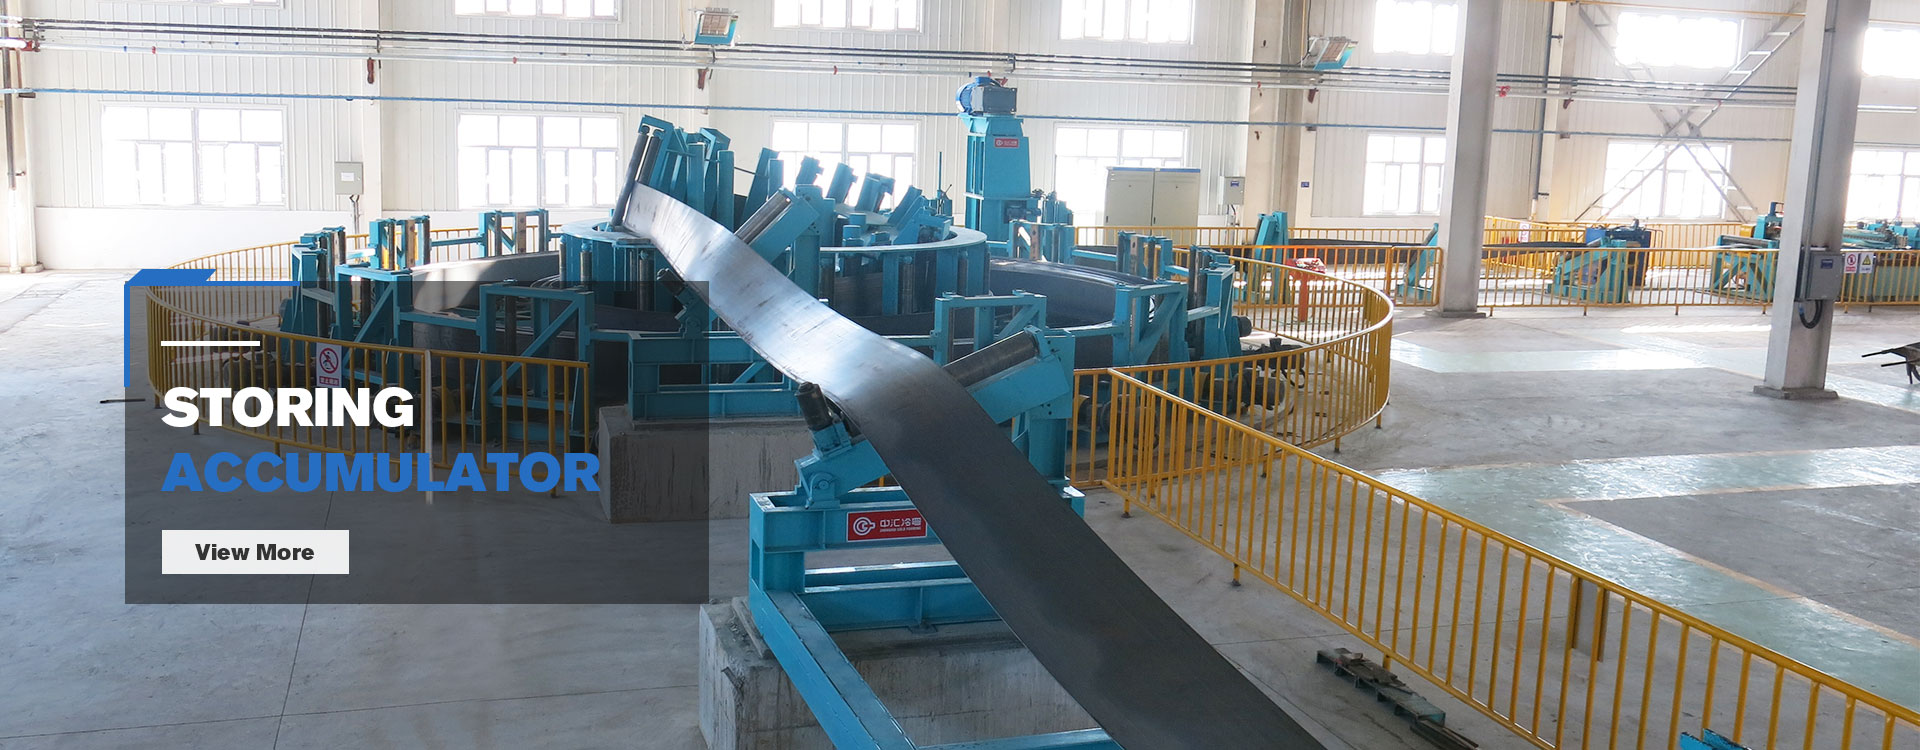 Shijiazhuang Zhonghui Cold-forming & Pipe-welding Equipment Co., Ltd.